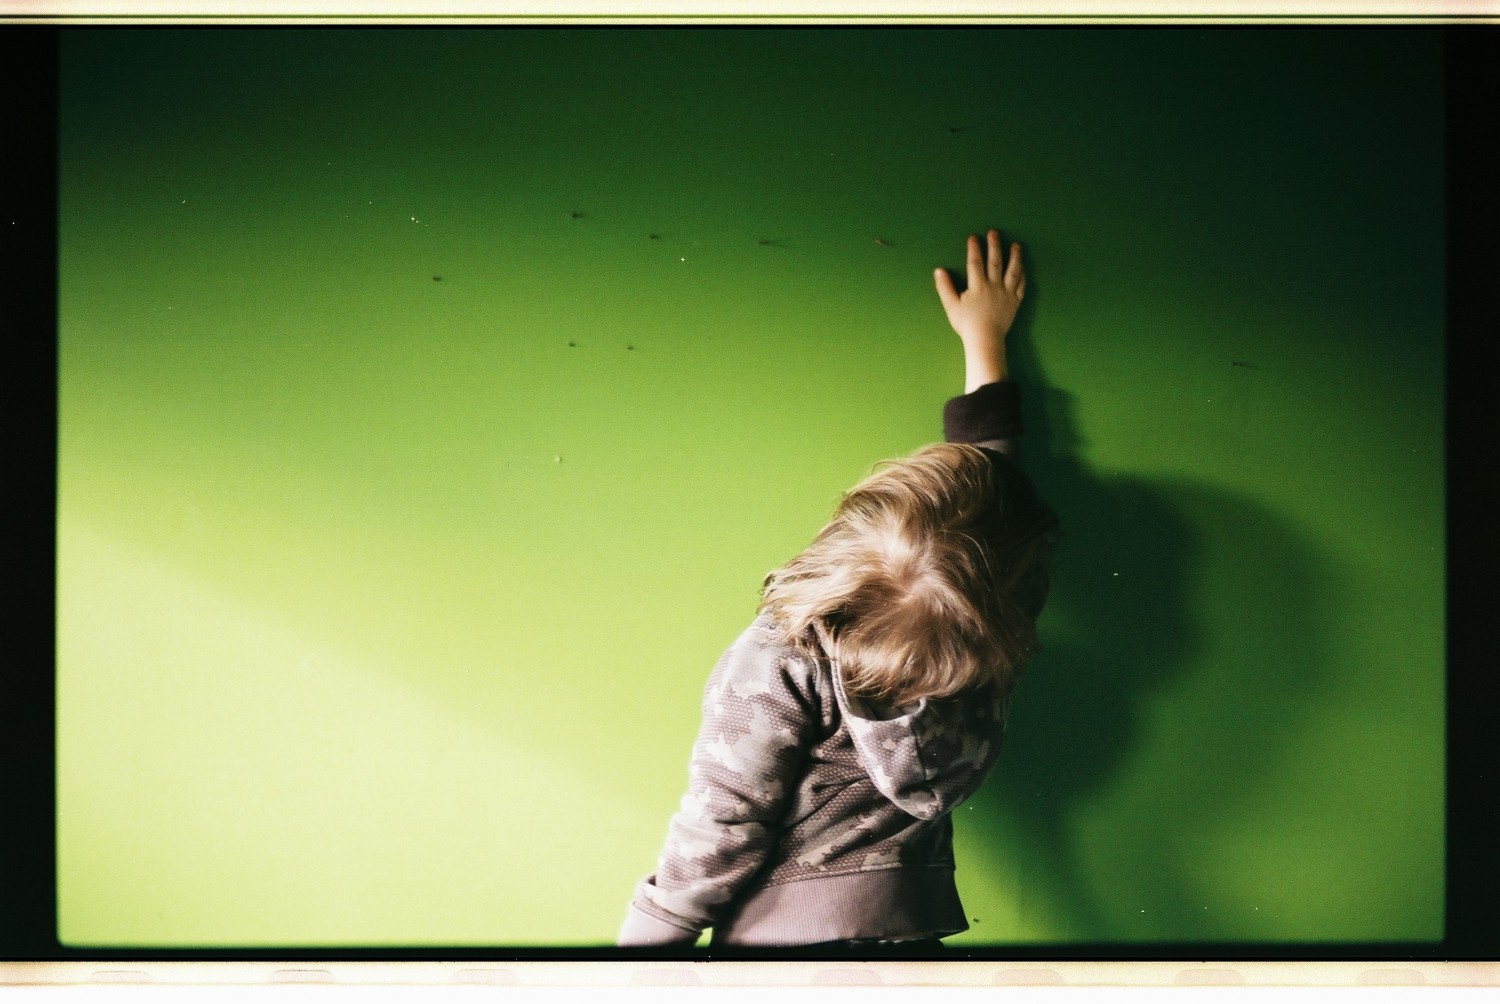 Dziecko z wyciągniętą do góry ręką na tle zielonej ściany.